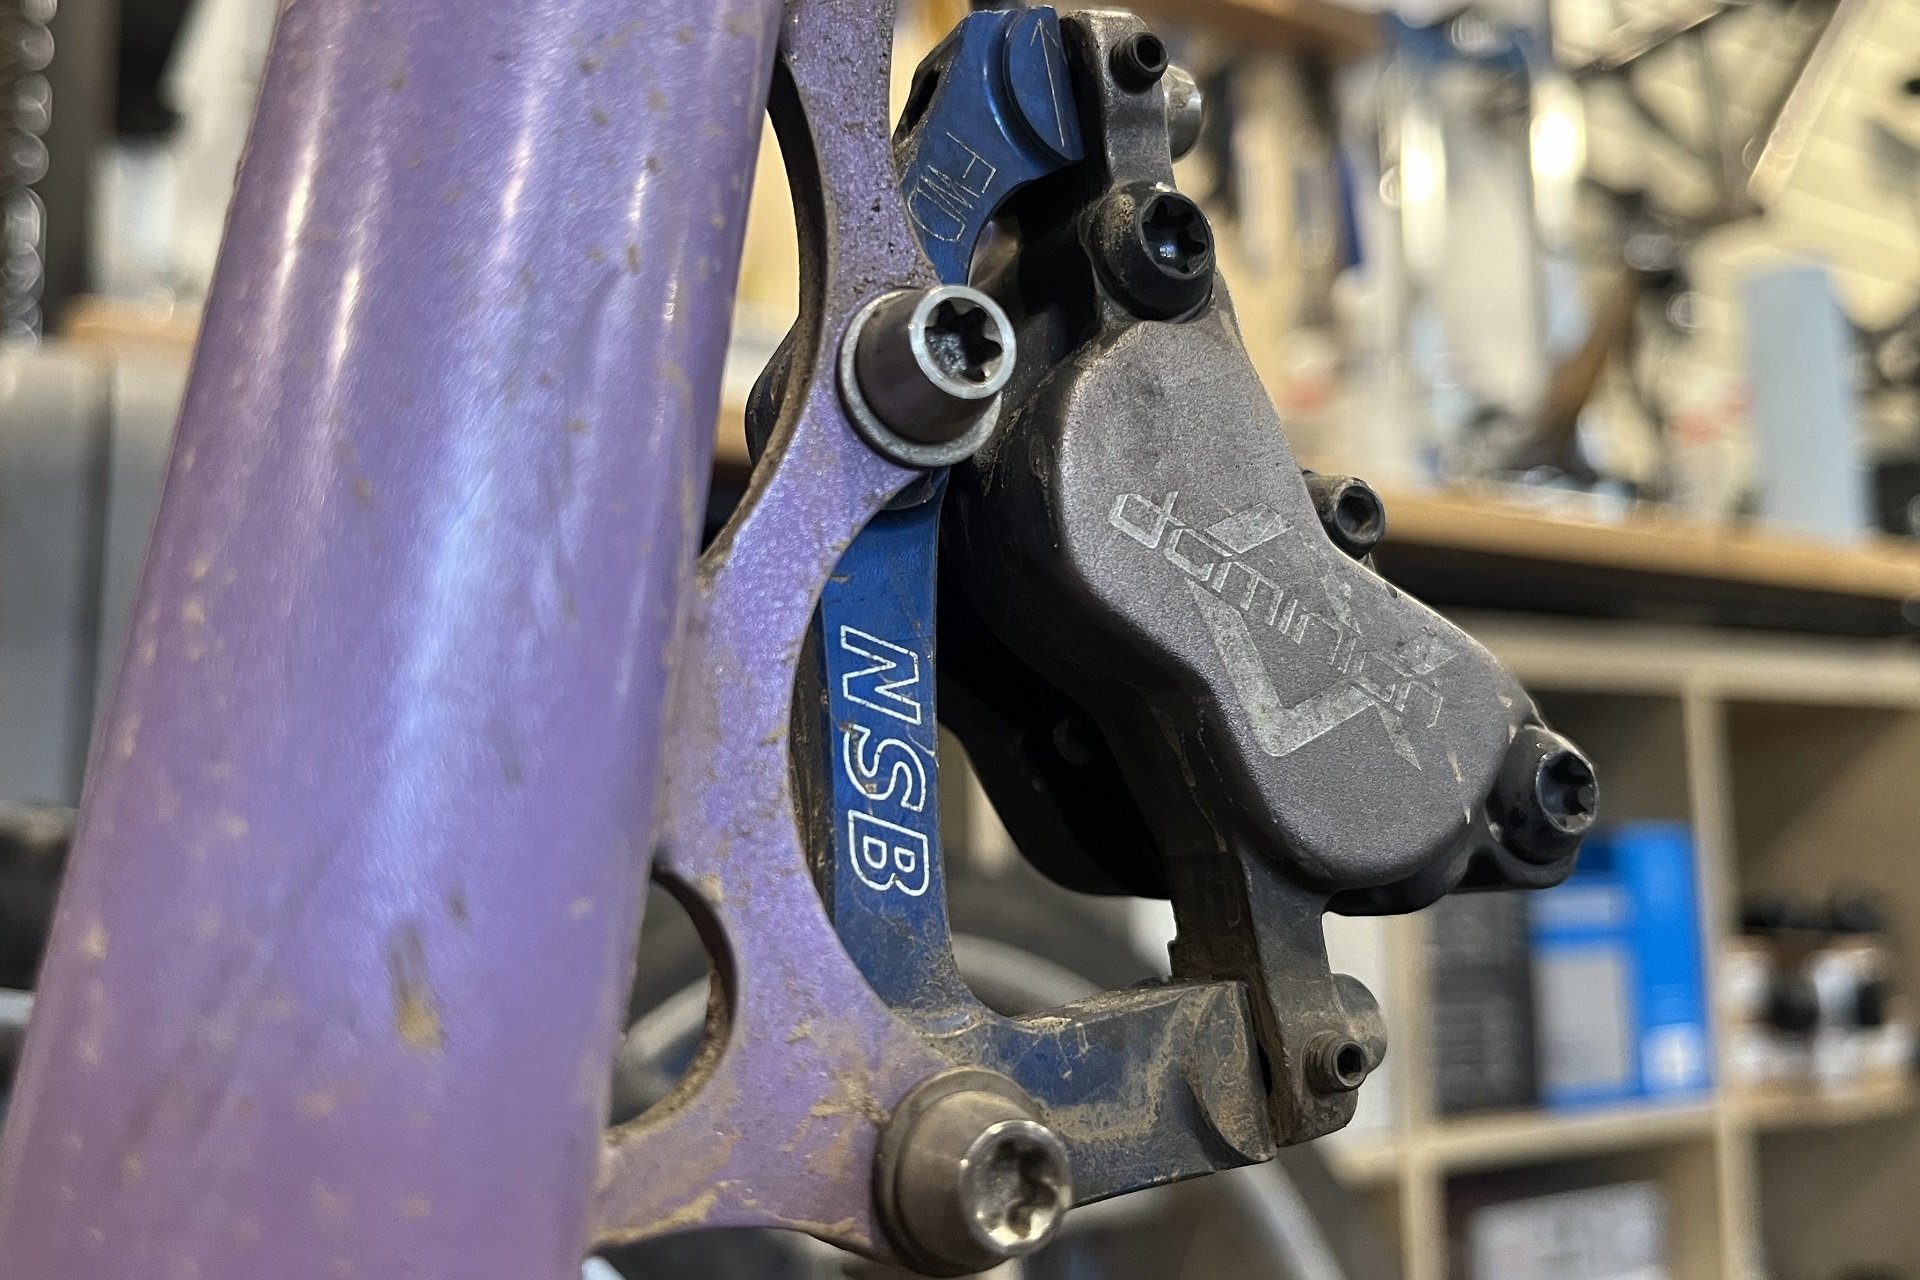 Shimano Professional Brake Bleed Kit – Mike's Bikes